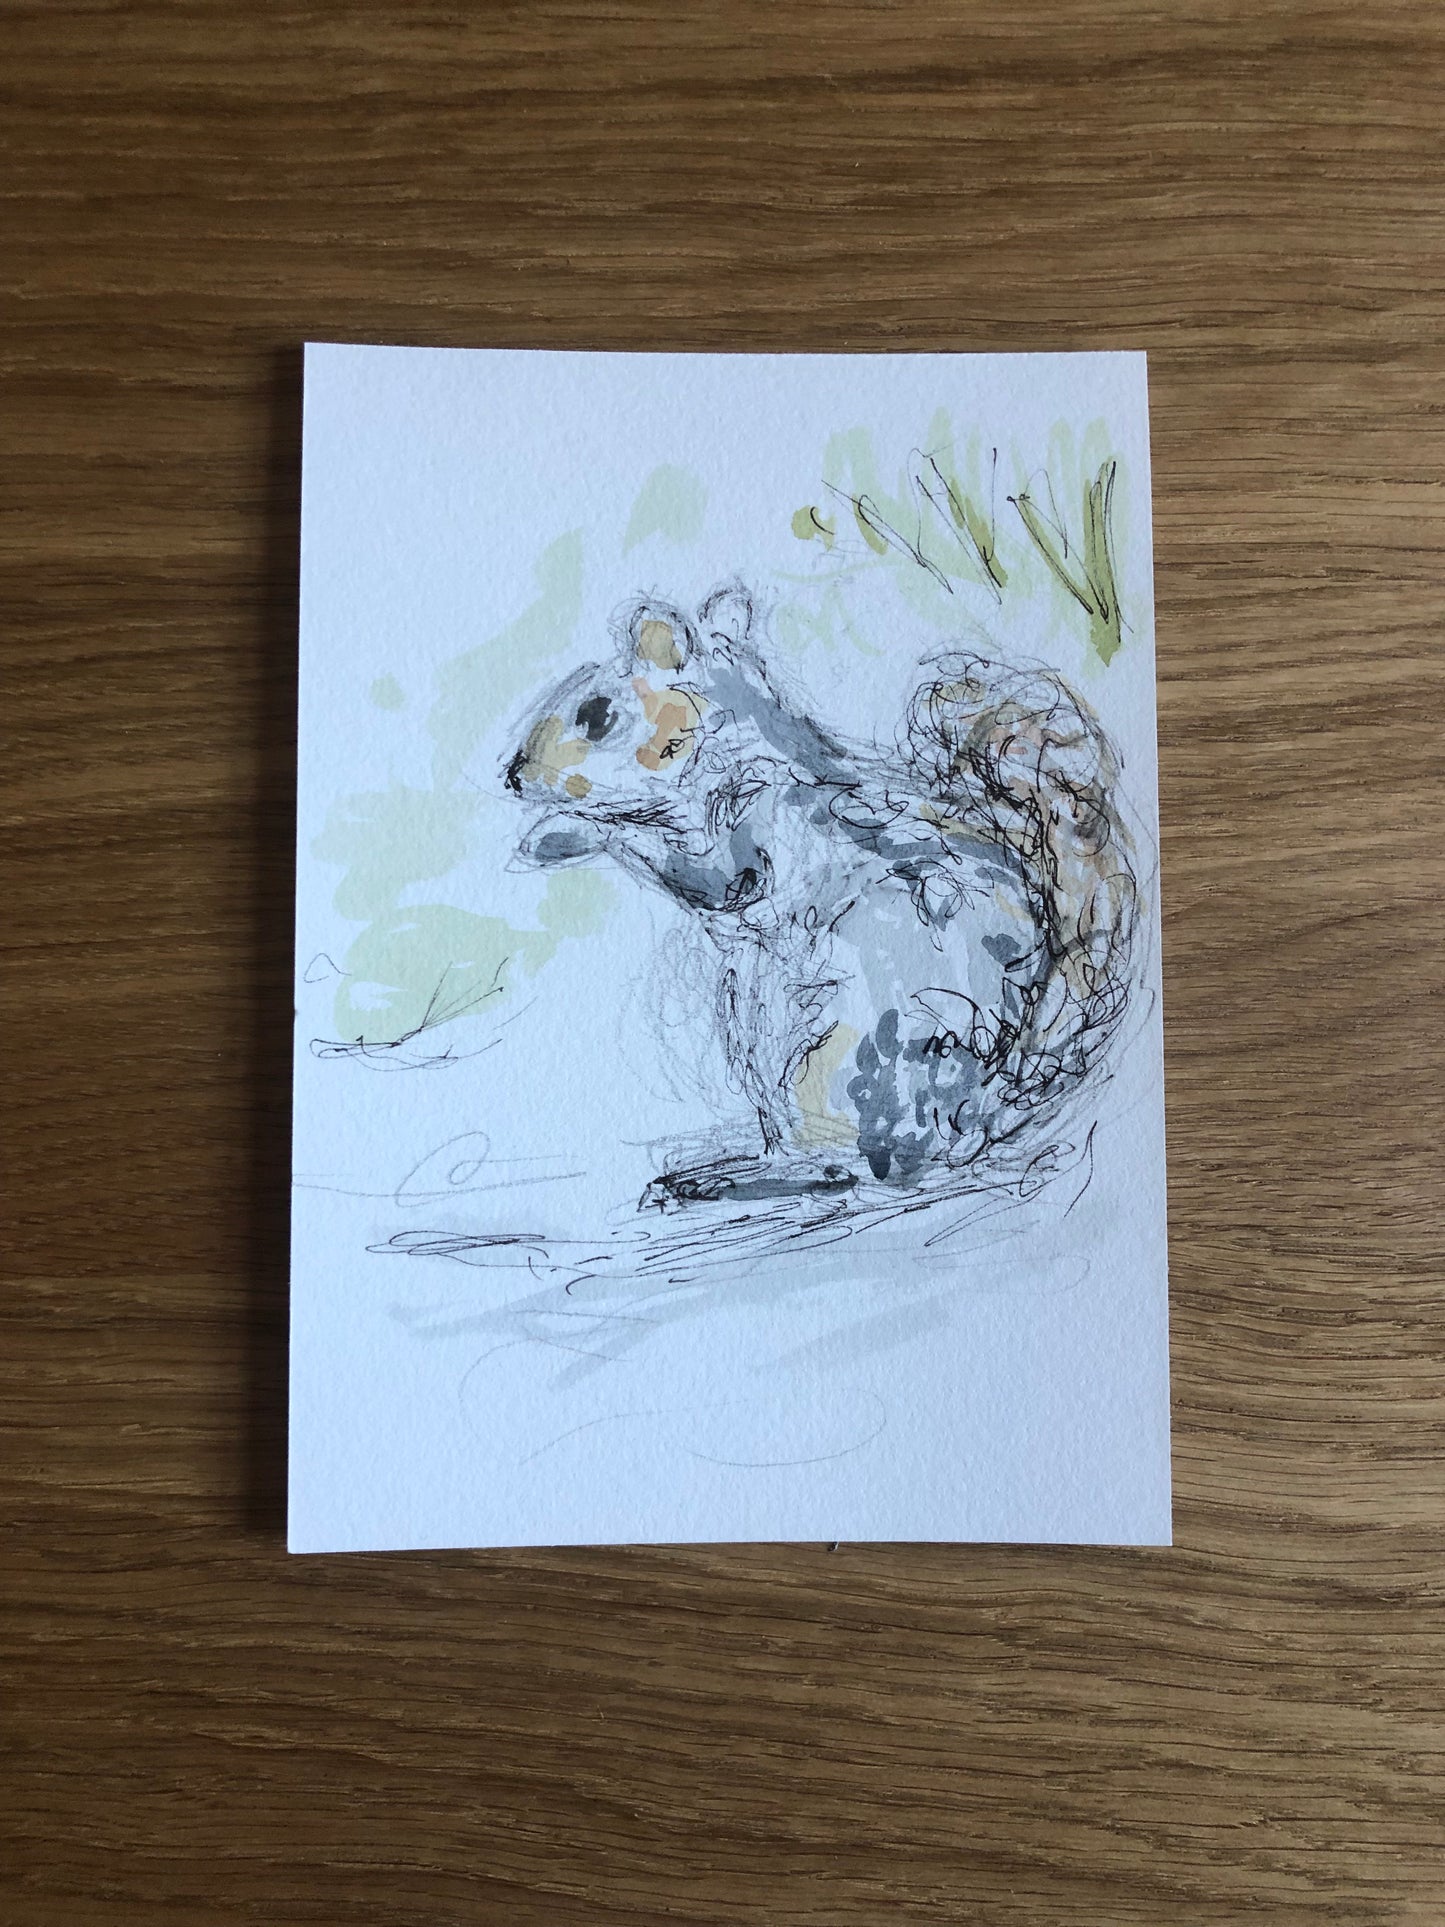 Squirrel in a winter's garden - SOLD